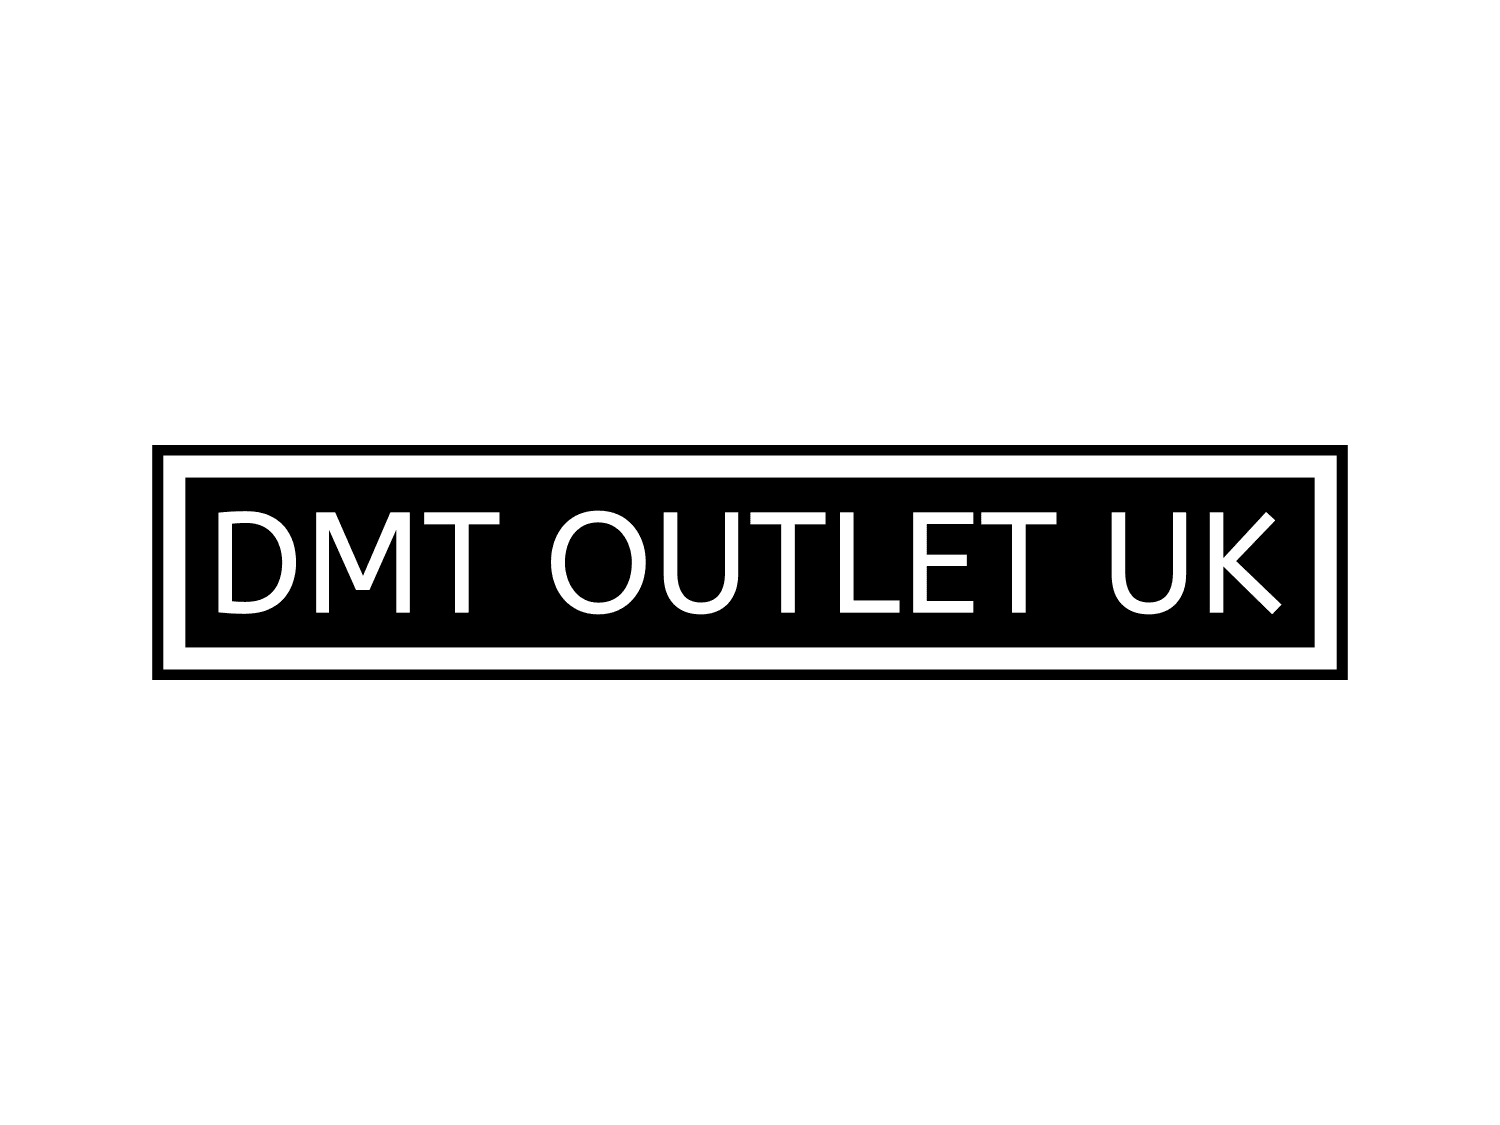 DMT OUTLET UK